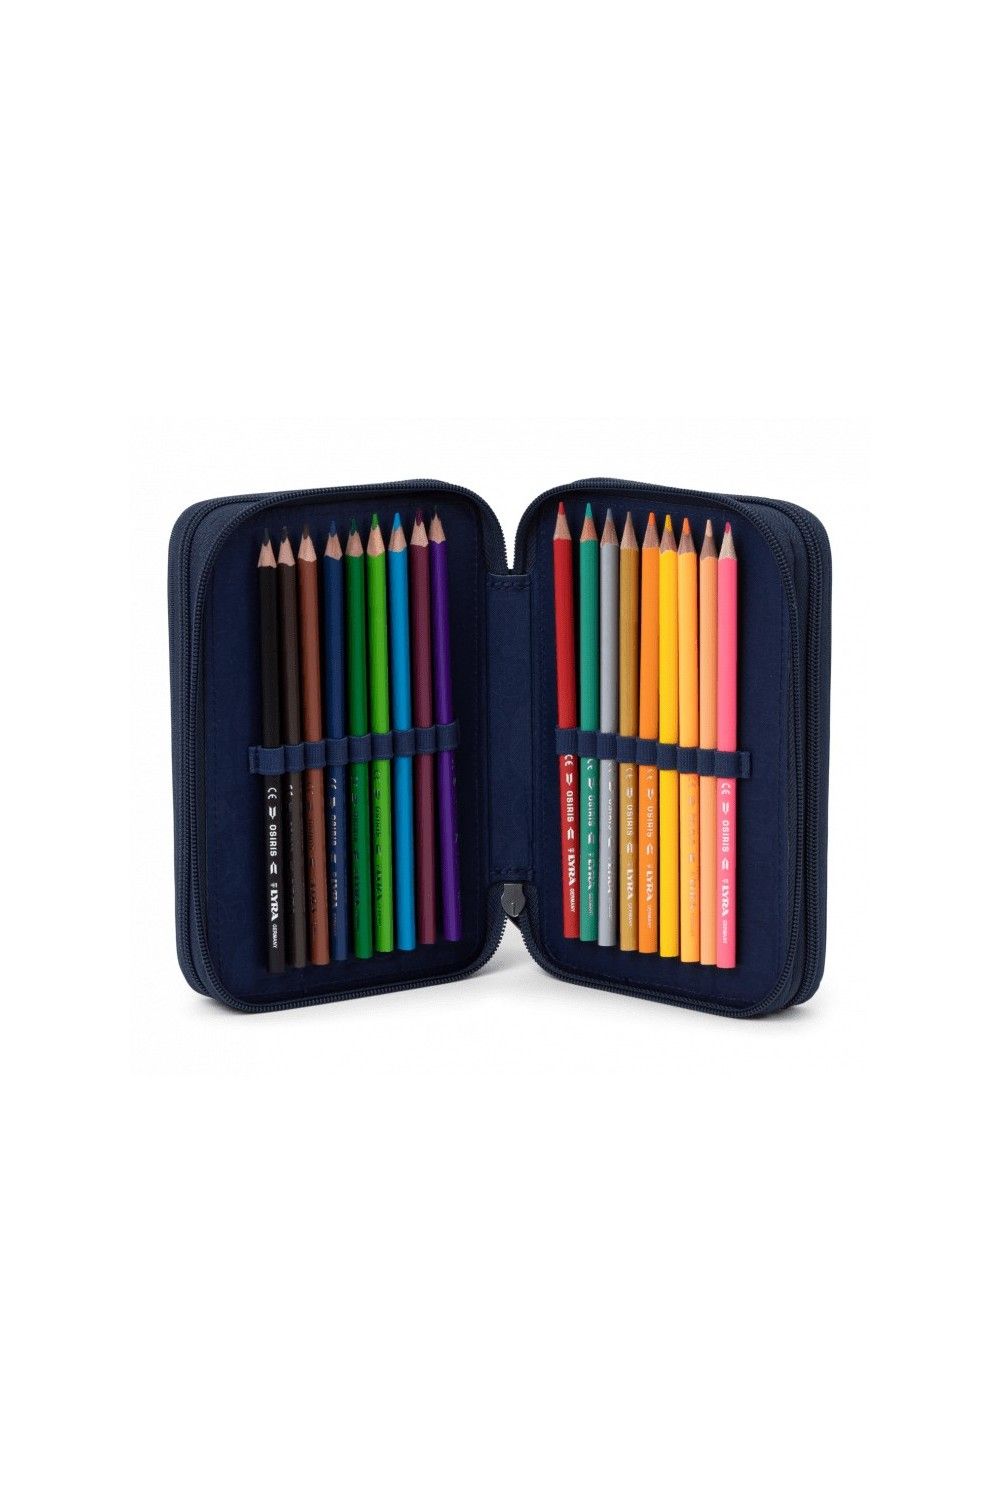 Ergobag maxi pencil case PhantBärsiewelt